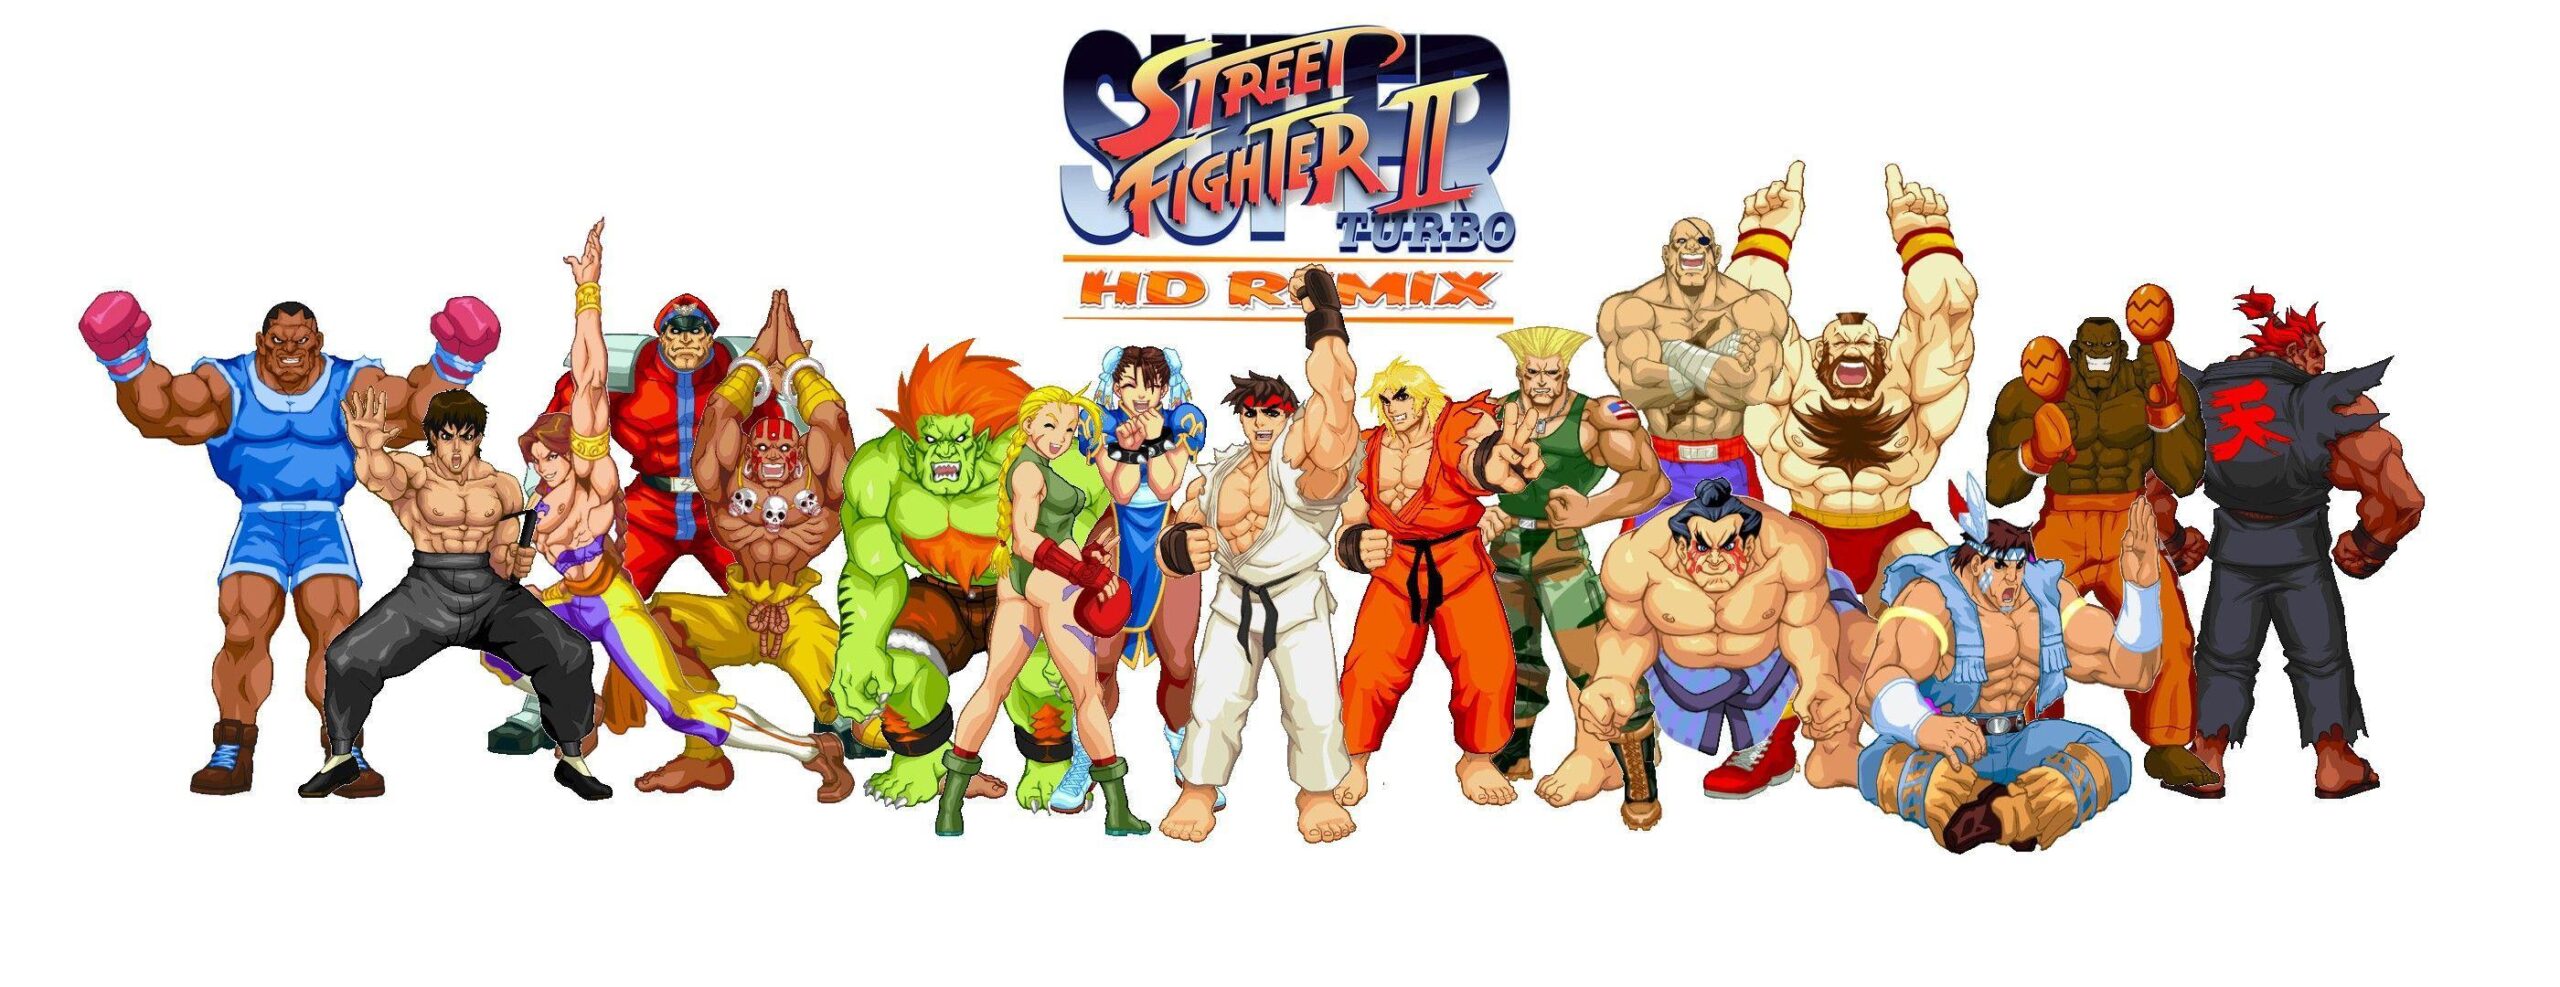 Street Fighter II Best Wallpaper Hd, Street Fighter II, Game